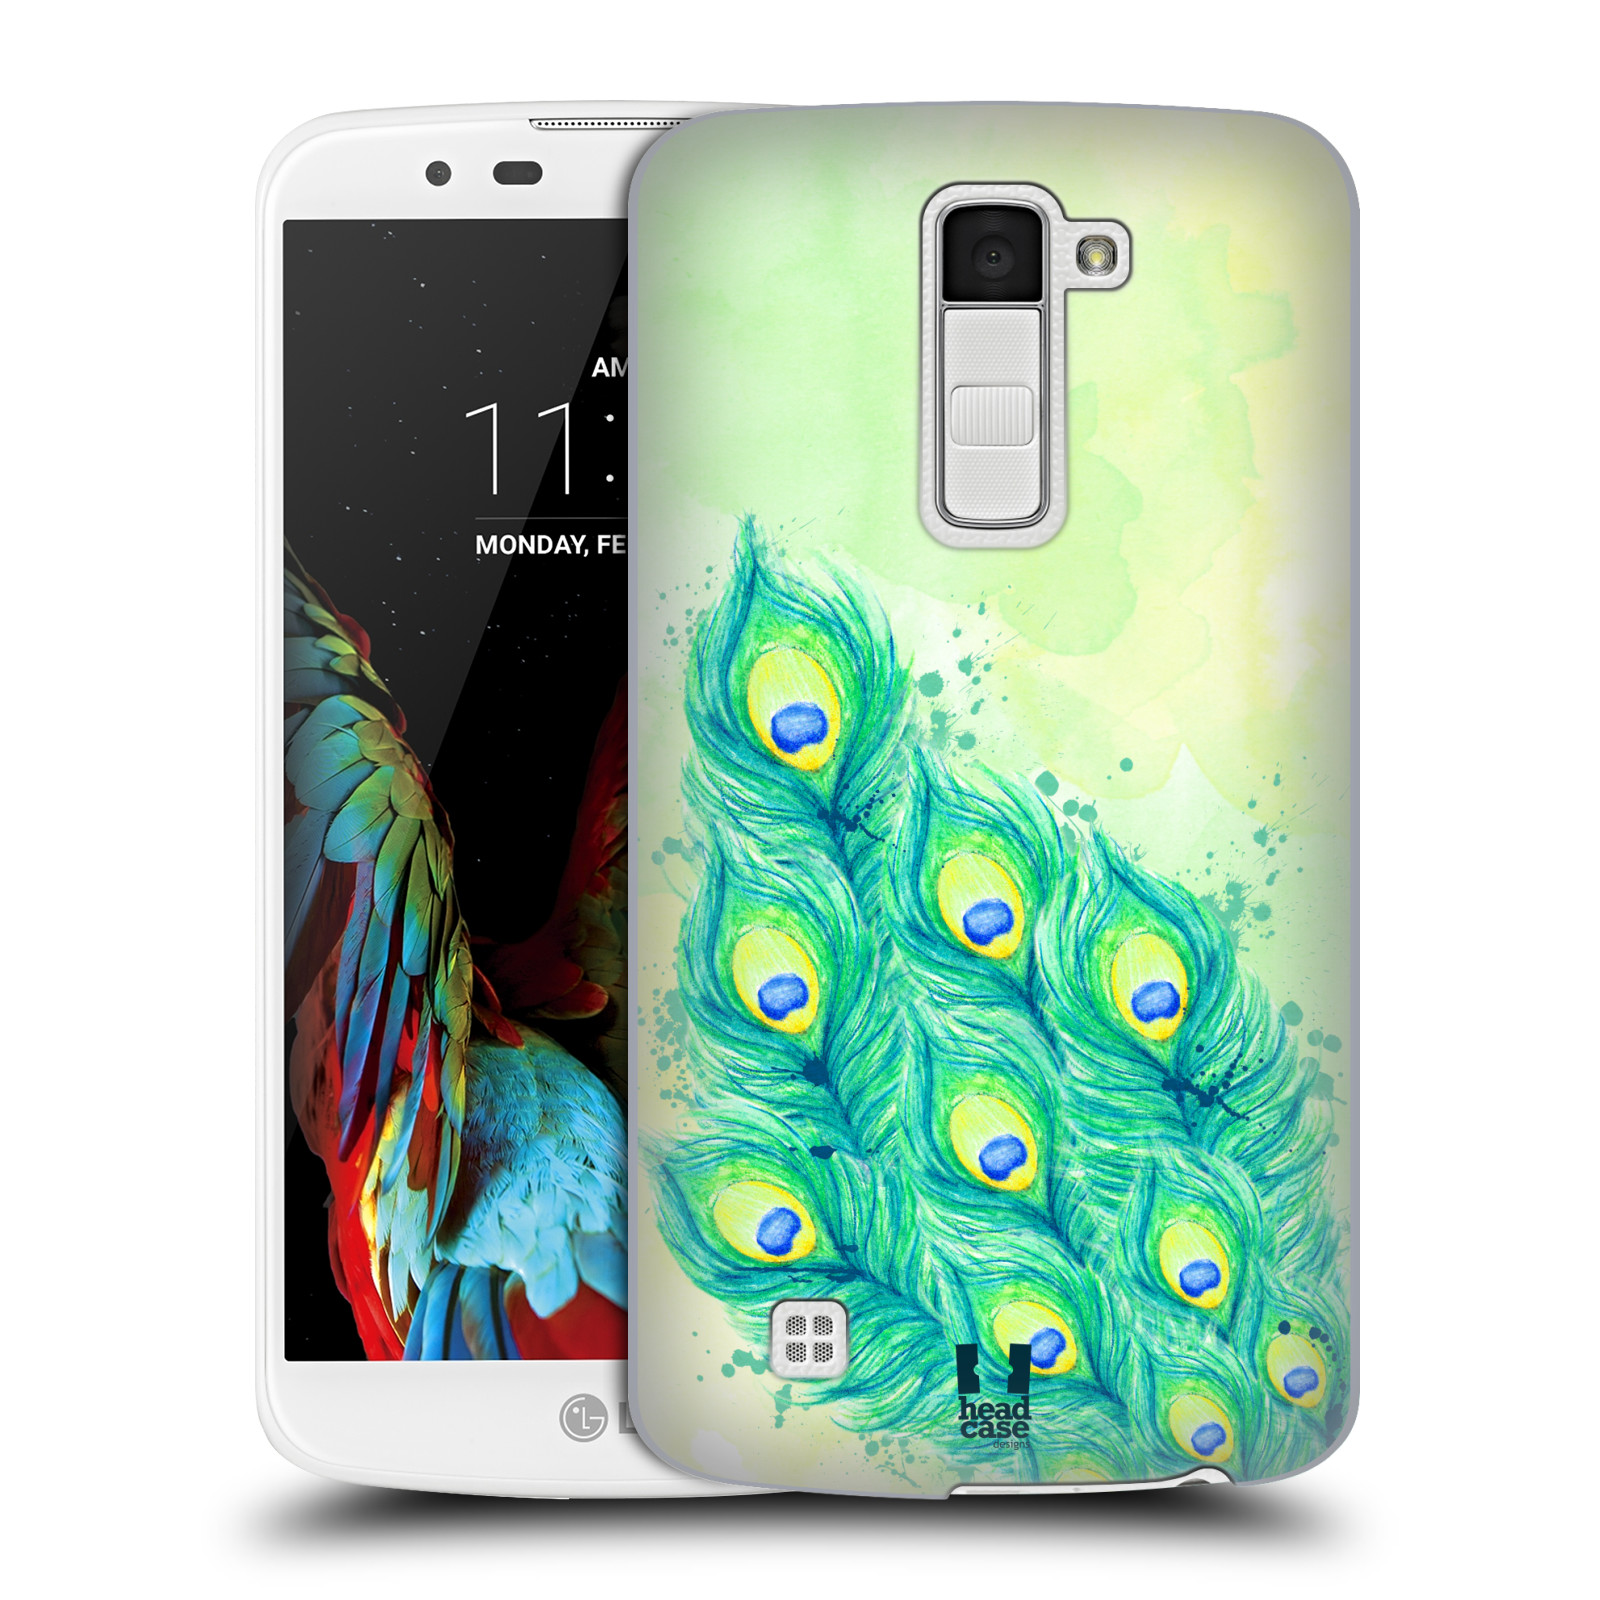 HEAD CASE plastový obal na mobil LG K10 vzor Paví pírka barevná MODRÁ A ZELENÁ